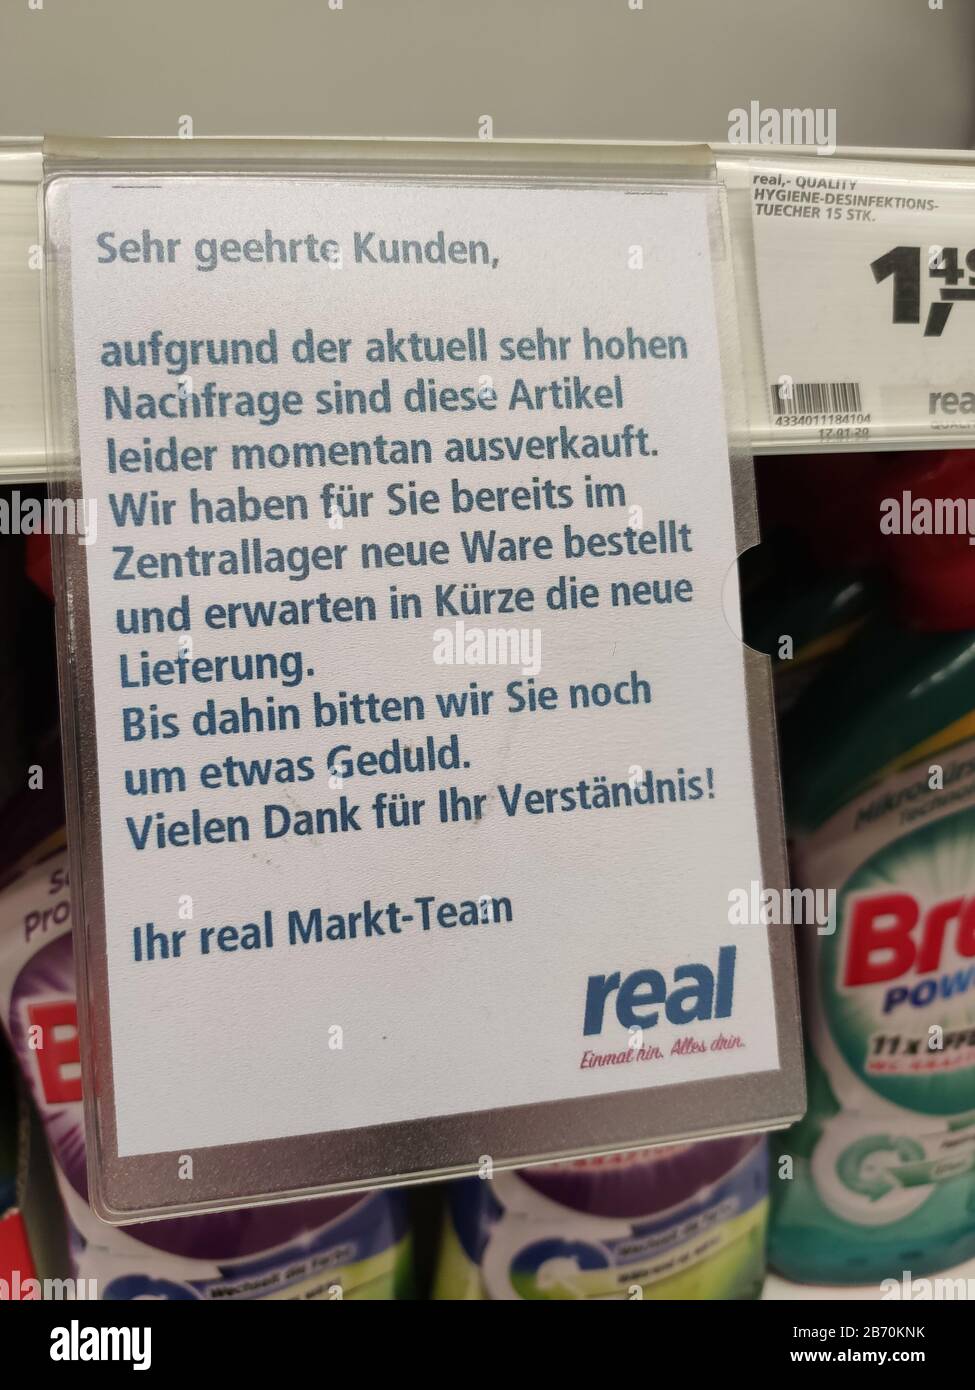 Berlino, Germania - Marzo 12 2020: Esaurito segno per disinfettante Sagrotan in supermercato Real a Berlino a causa di bulk-acquisto a causa di Coronavirus Foto Stock